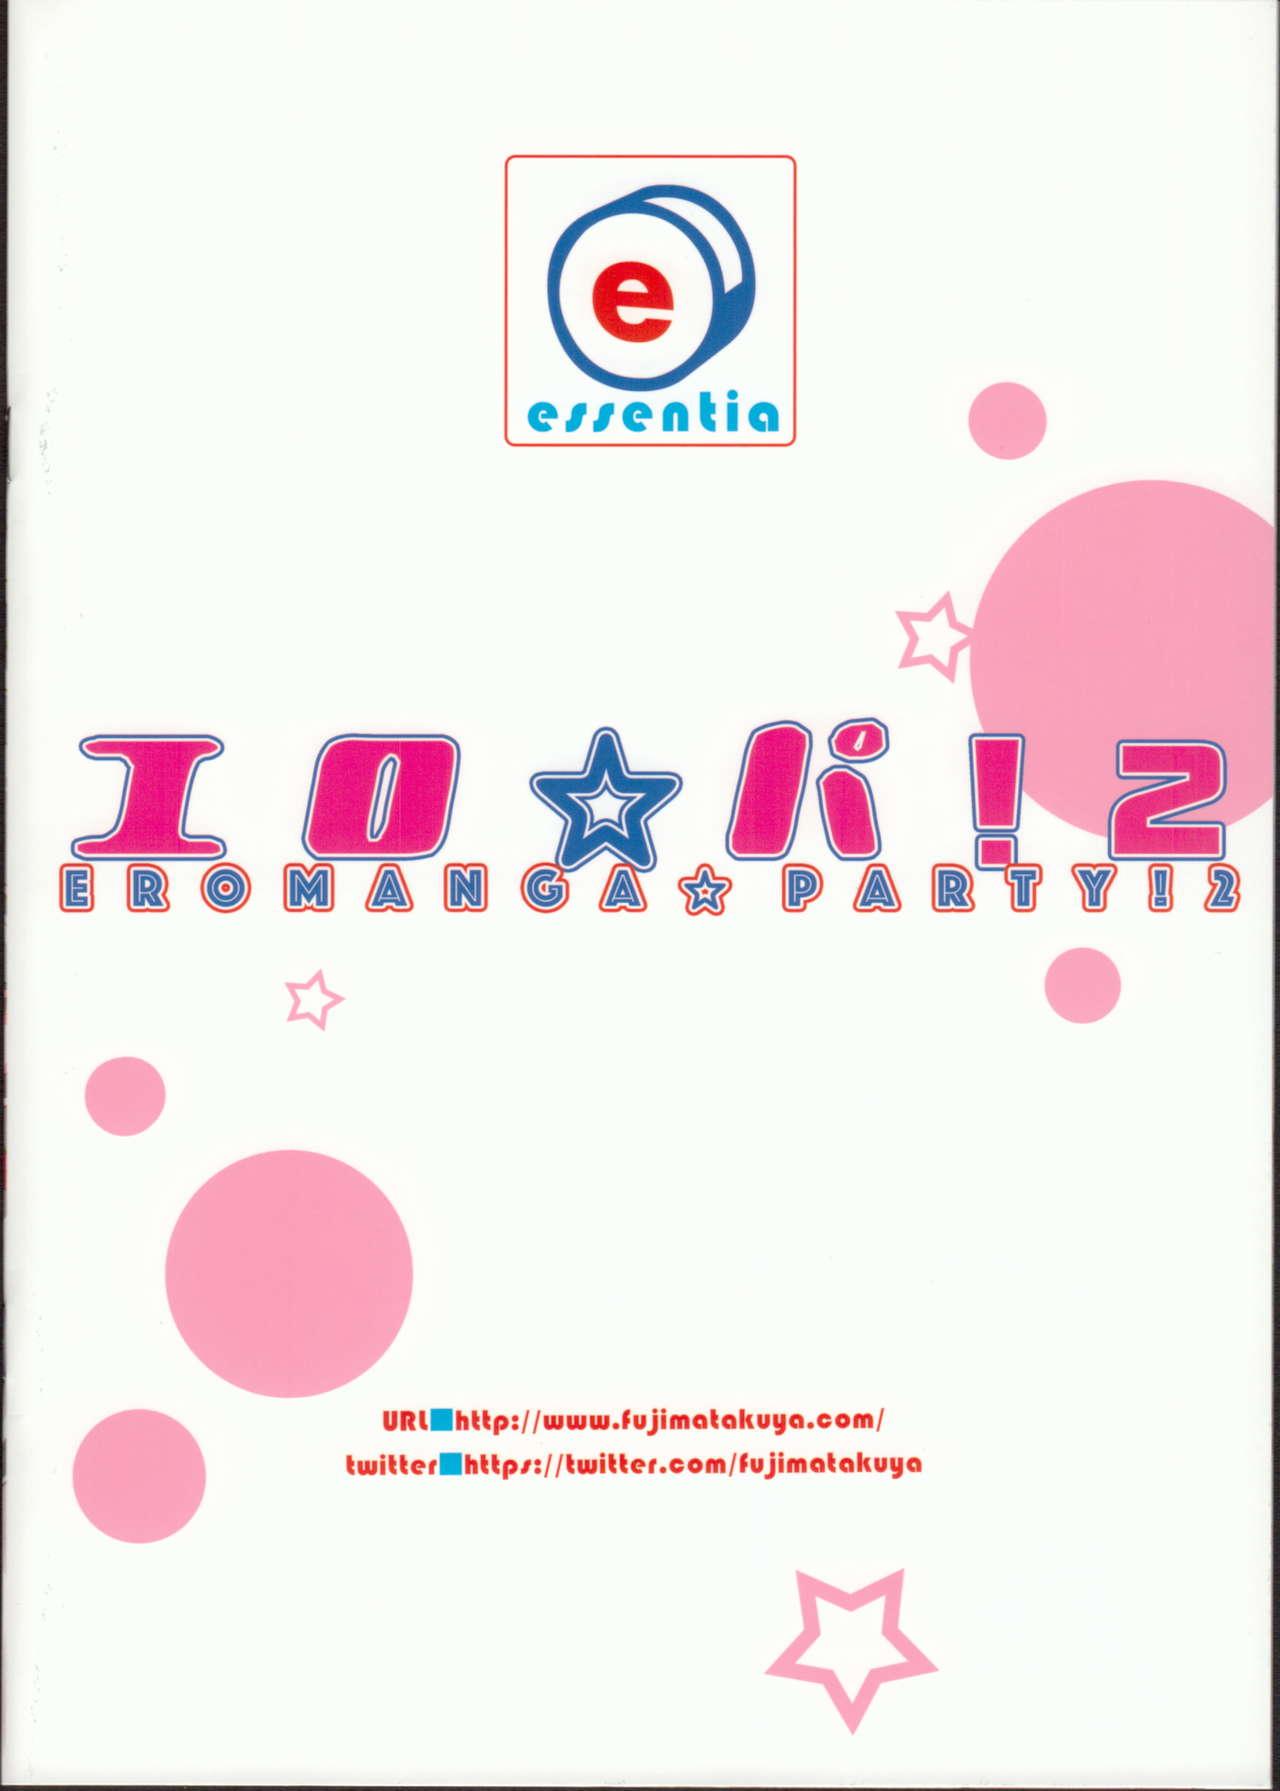 Ero☆Pa! 2 - Eromanga☆Party! 2 10